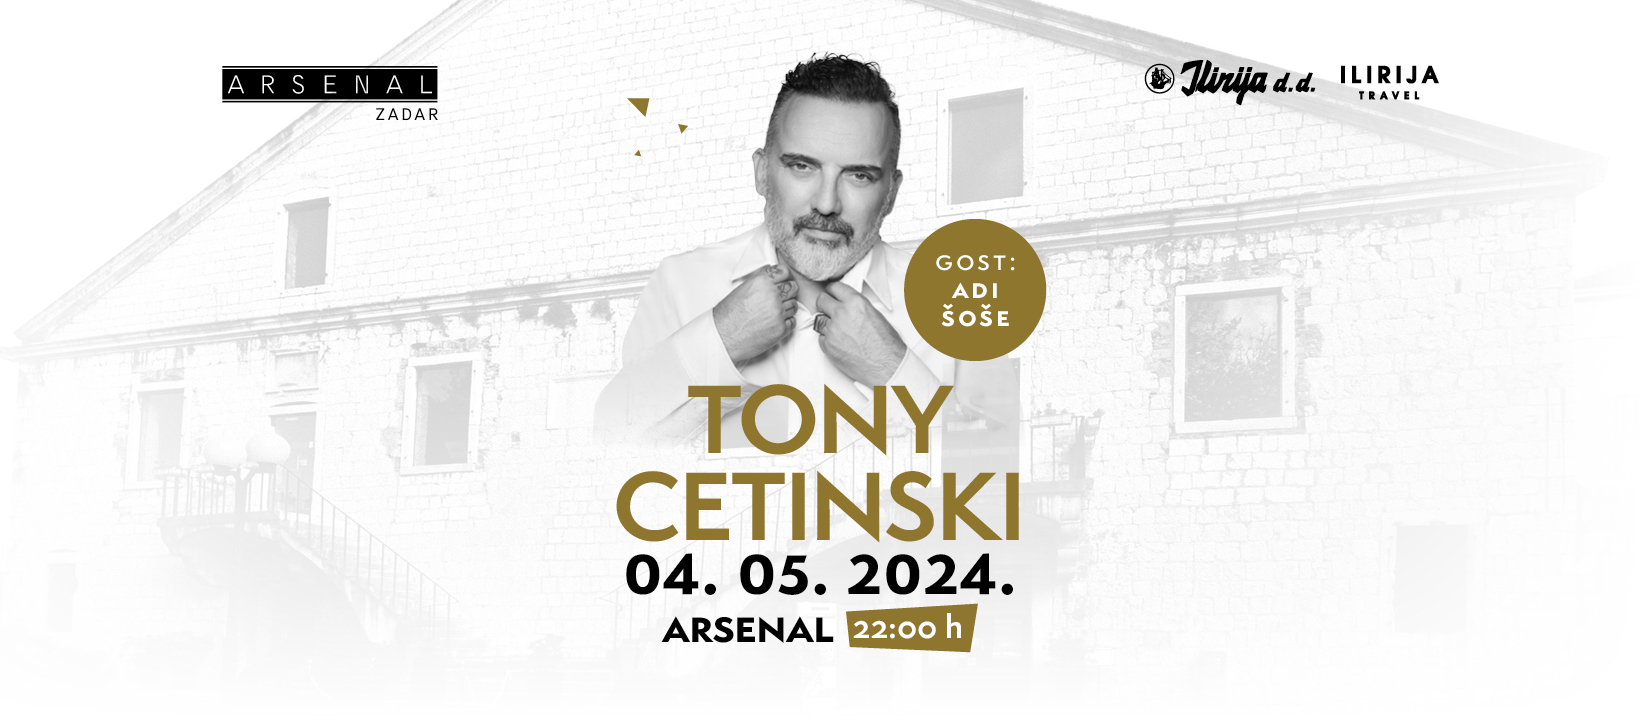 Arsenal_Toni_Cetinski_2024_FB_cover_1640x720px_04032024